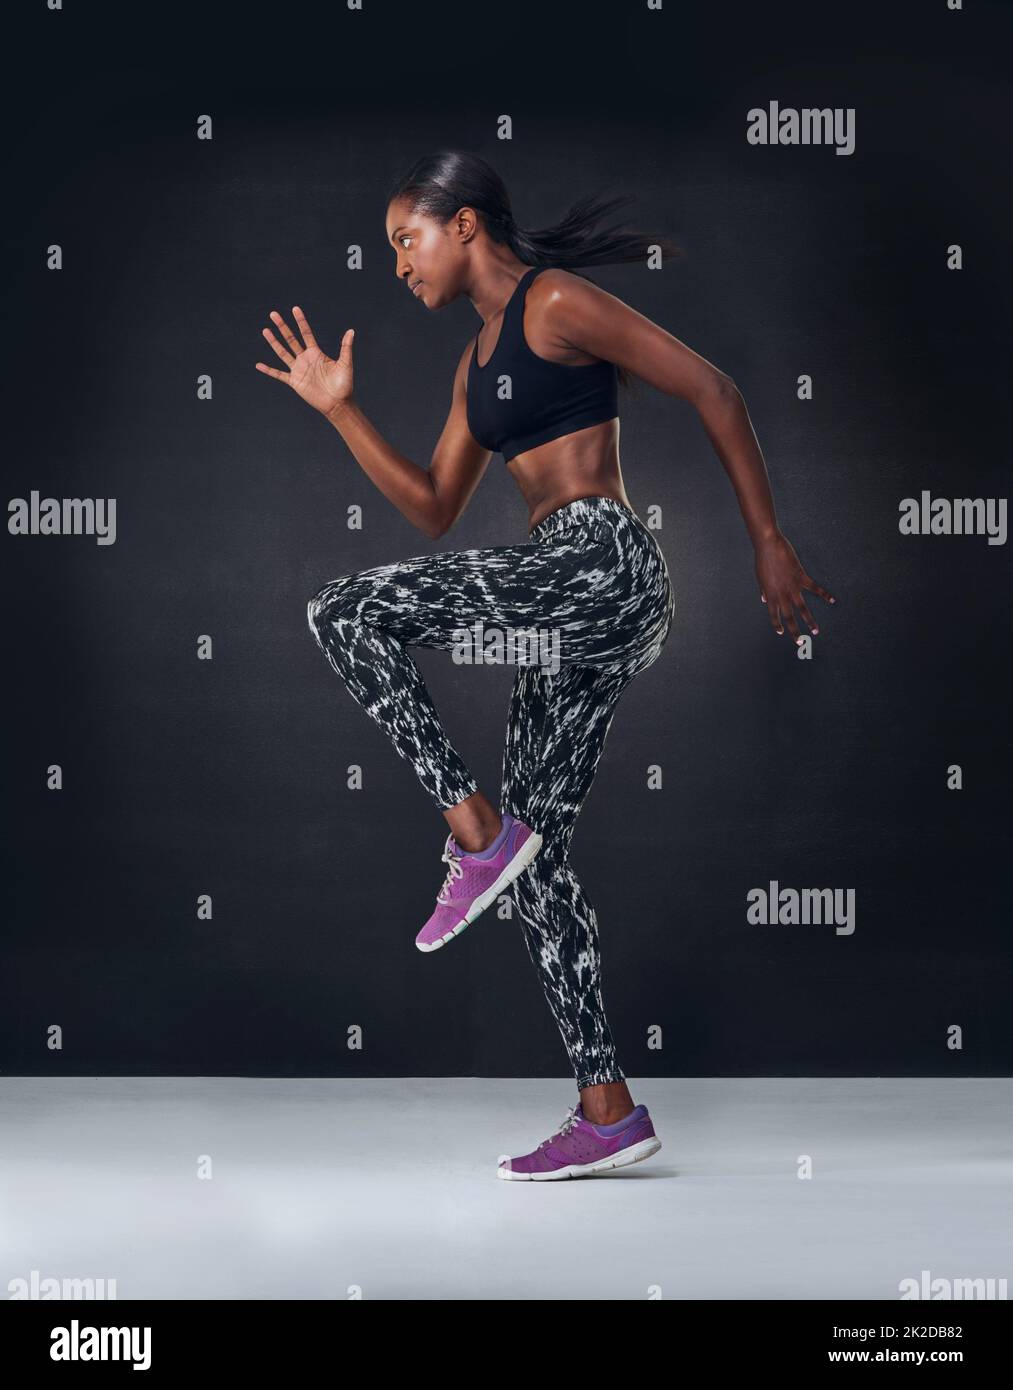 Besitzen, dass Cardio-Training. Studioaufnahme einer schönen jungen Frau, die vor einem schwarzen Hintergrund auf der Stelle joggt. Stockfoto